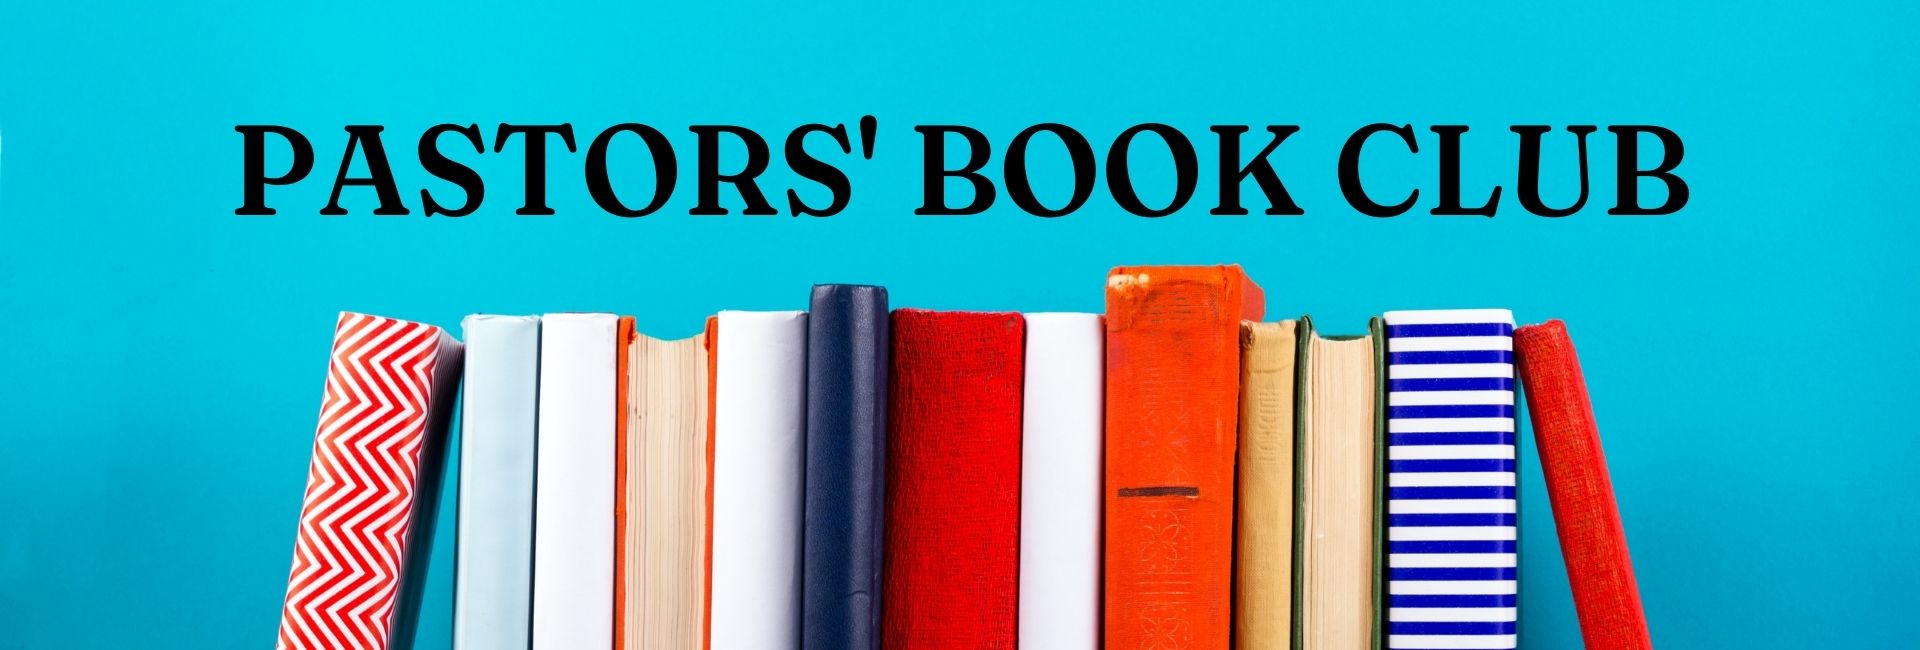 Pastors' Book Club Web